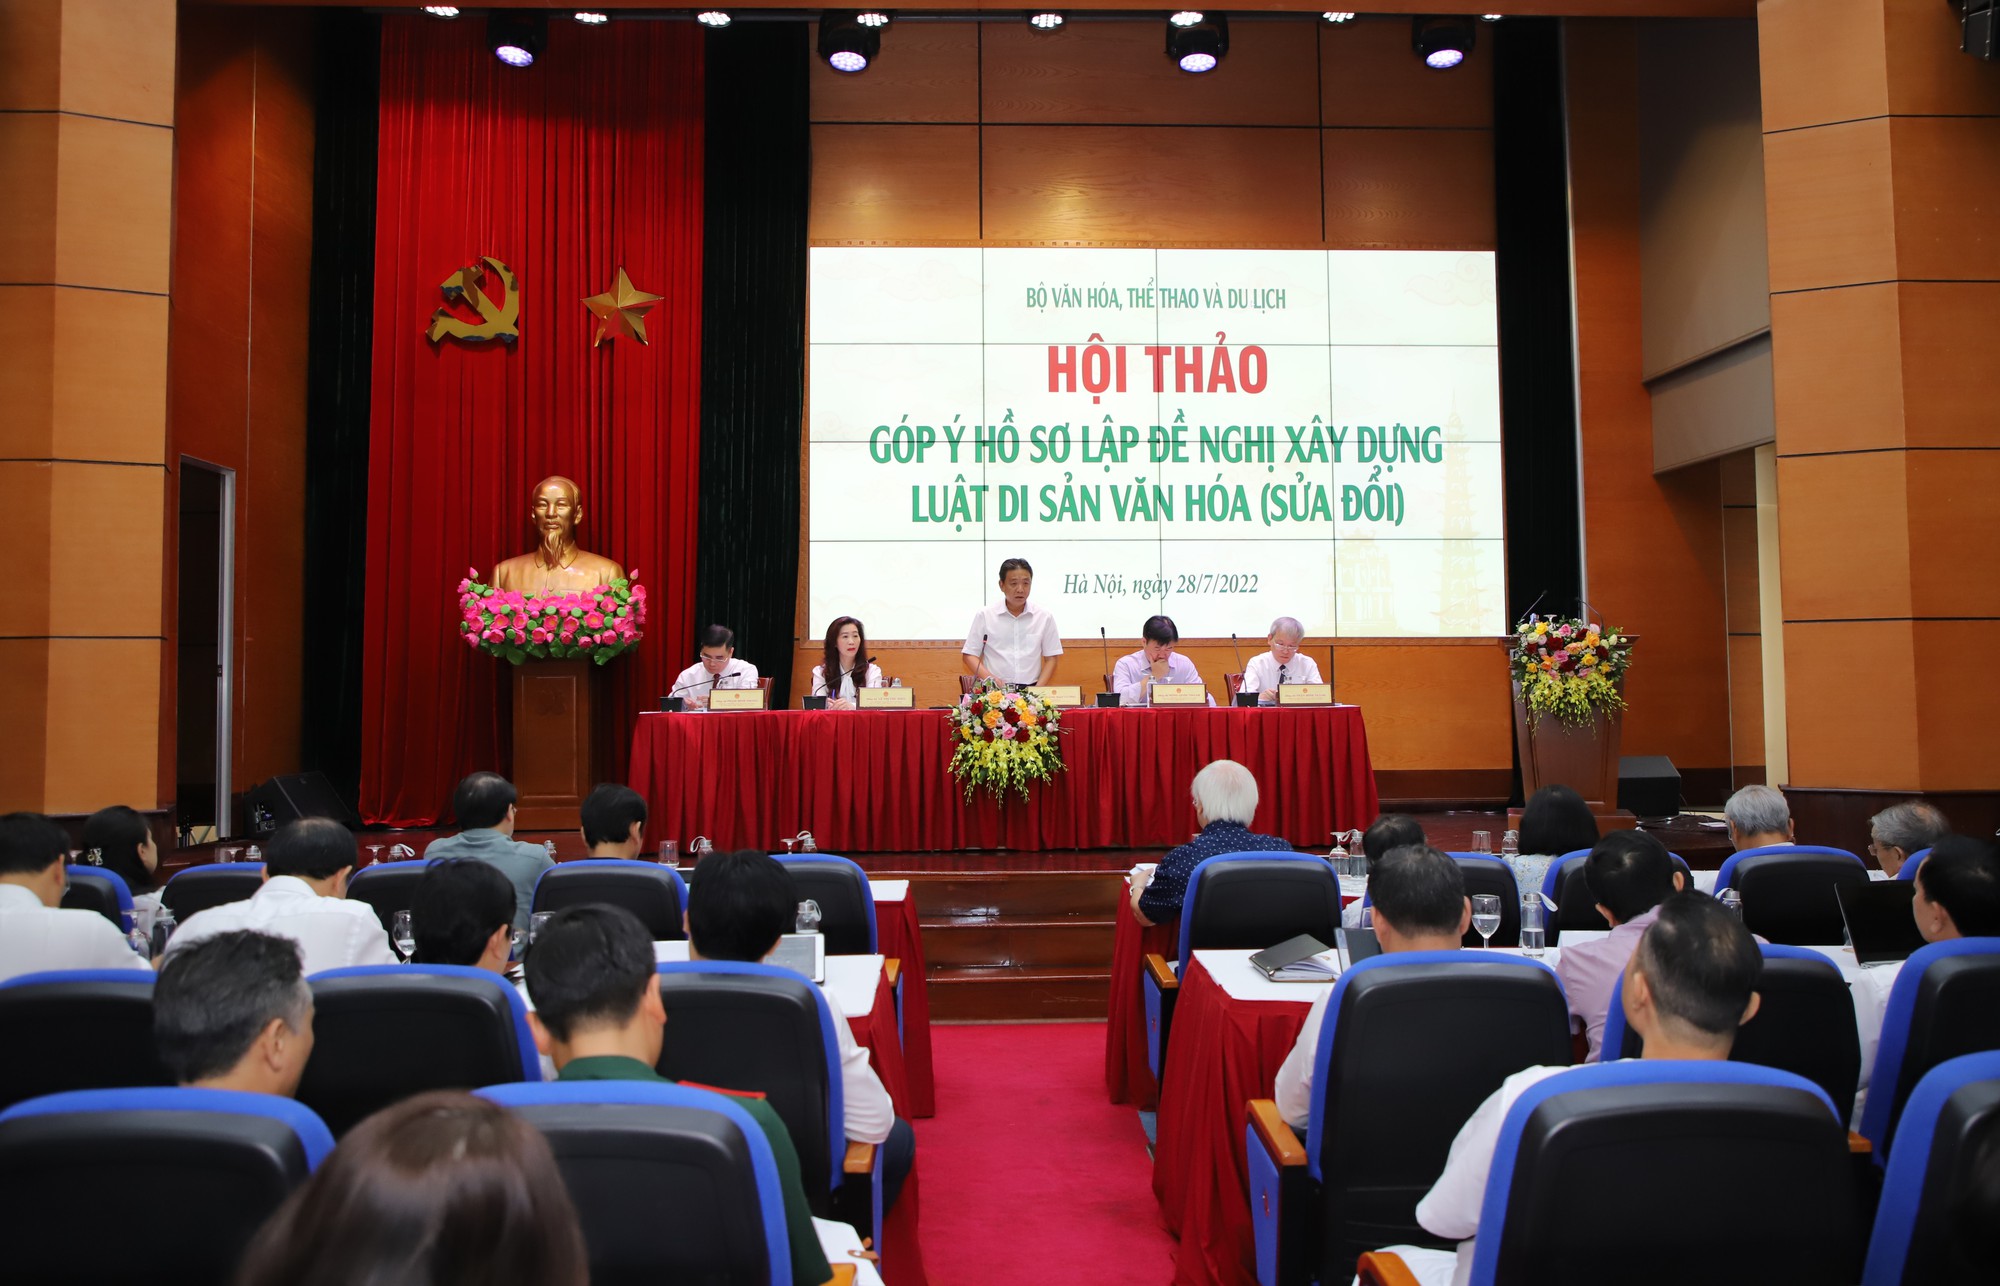 Hội thảo góp ý hồ sơ lập đề nghị xây dựng Luật Di sản văn hóa (sửa đổi), diễn ra vào ngày 28/7 tại Hà Nội.